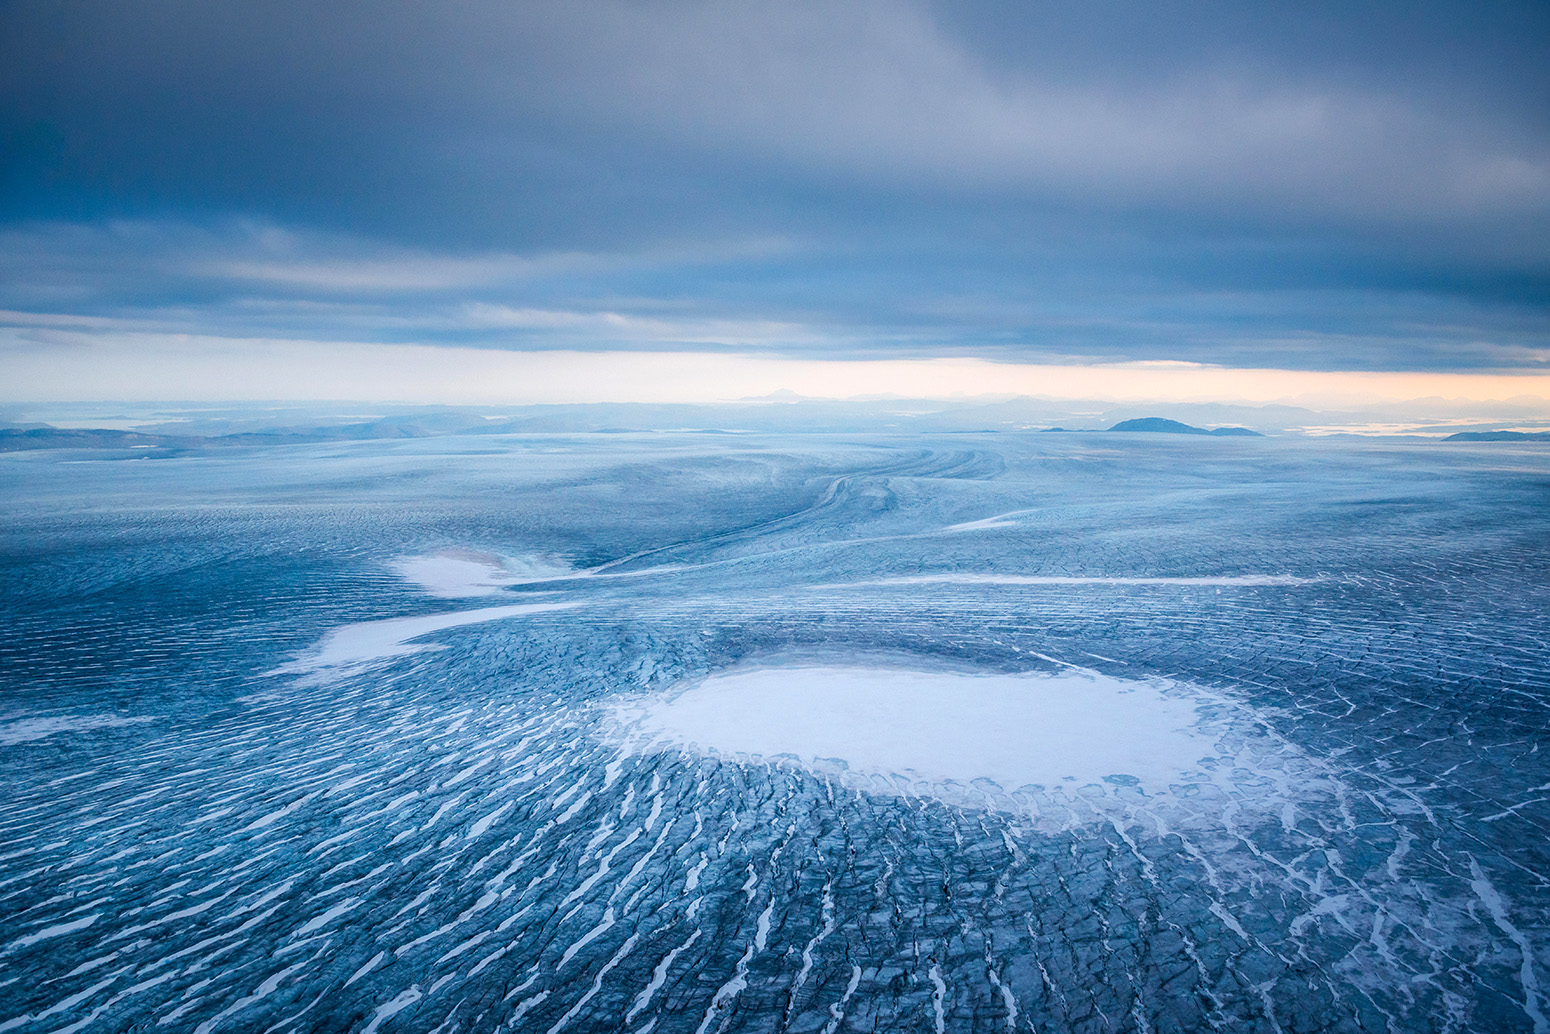 格陵兰冰盖的鸟瞰图。图片来源:imageBROKER / Alamy Stock PhotoKXAJ2W